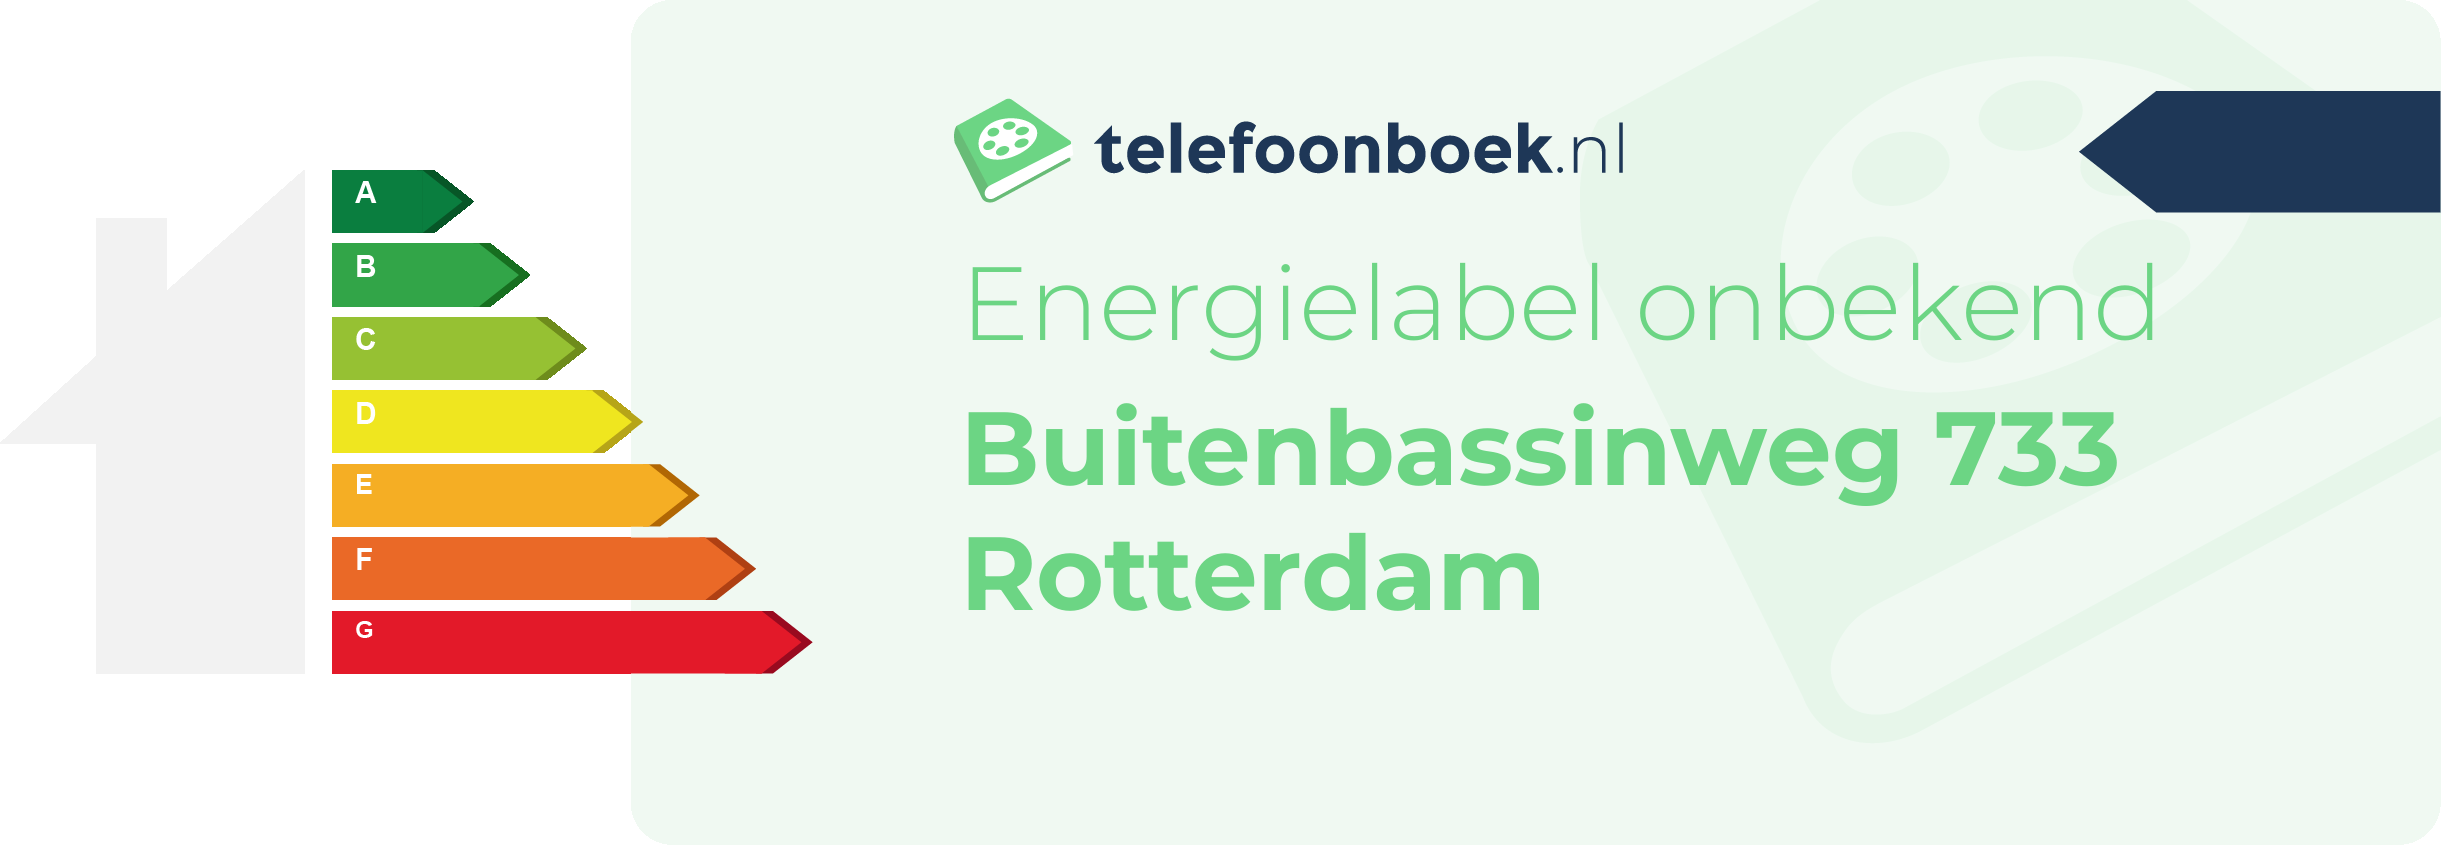 Energielabel Buitenbassinweg 733 Rotterdam